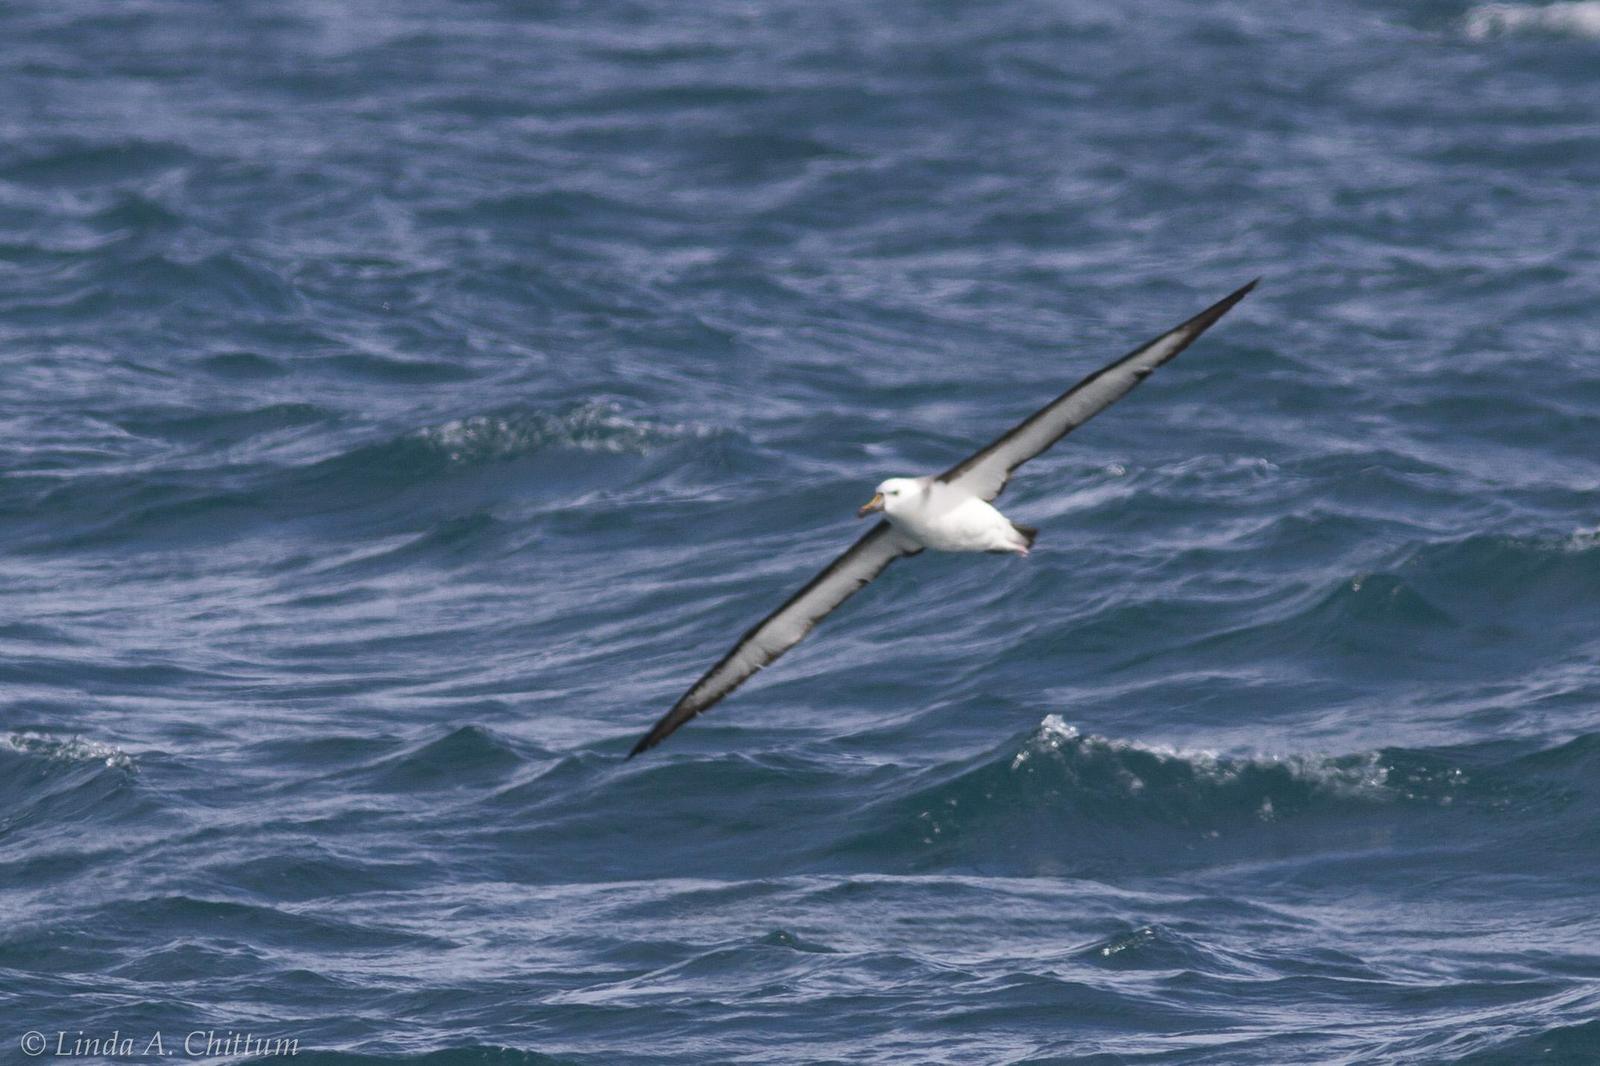 Yellow-nosed Albatross (Atlantic) Photo by Linda Chittum